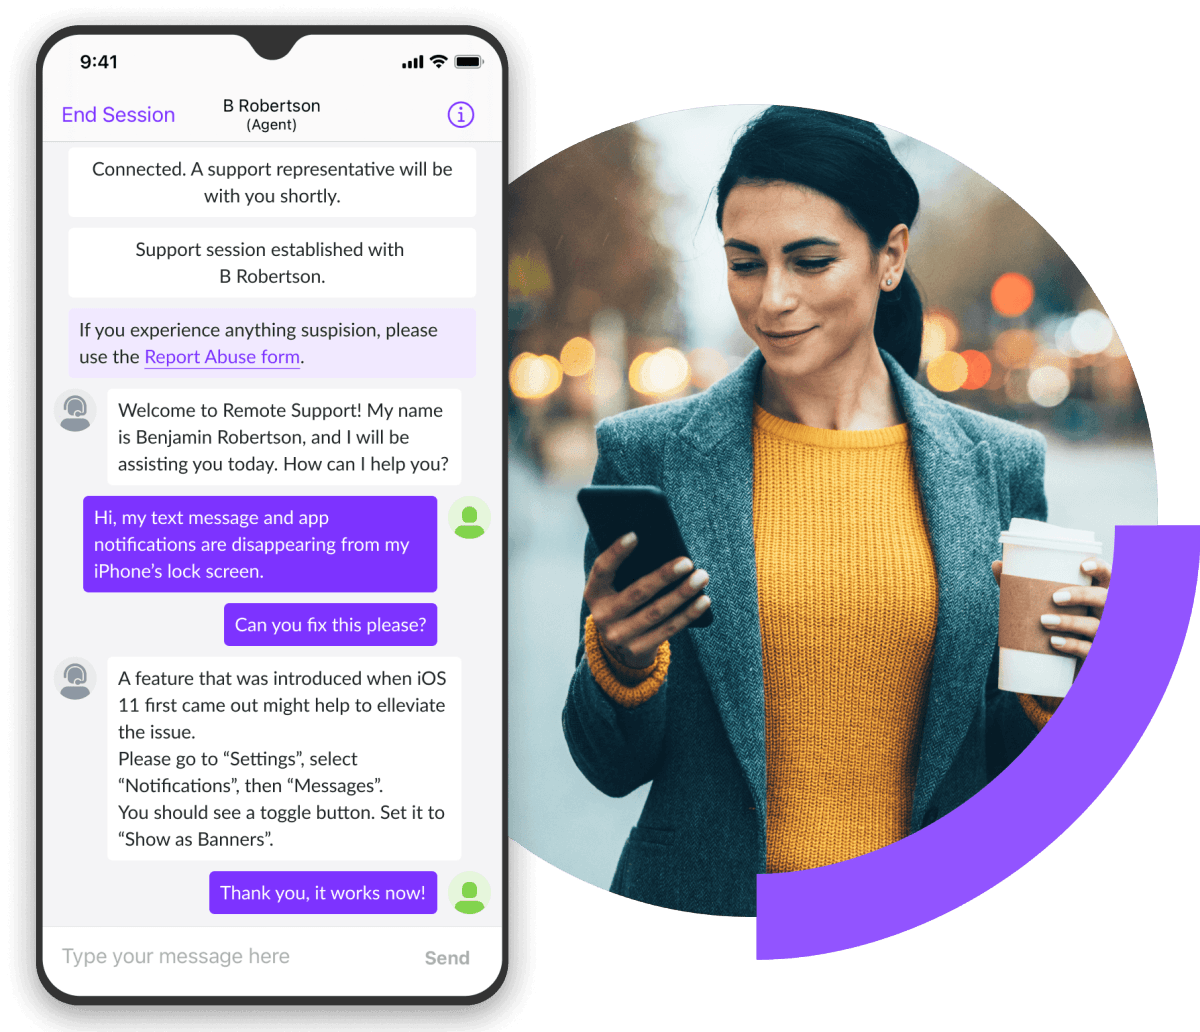 Sesión de chat de asistencia remota que aparece en un teléfono móvil acompañado de una imagen de una mujer que camina mirando el teléfono móvil.